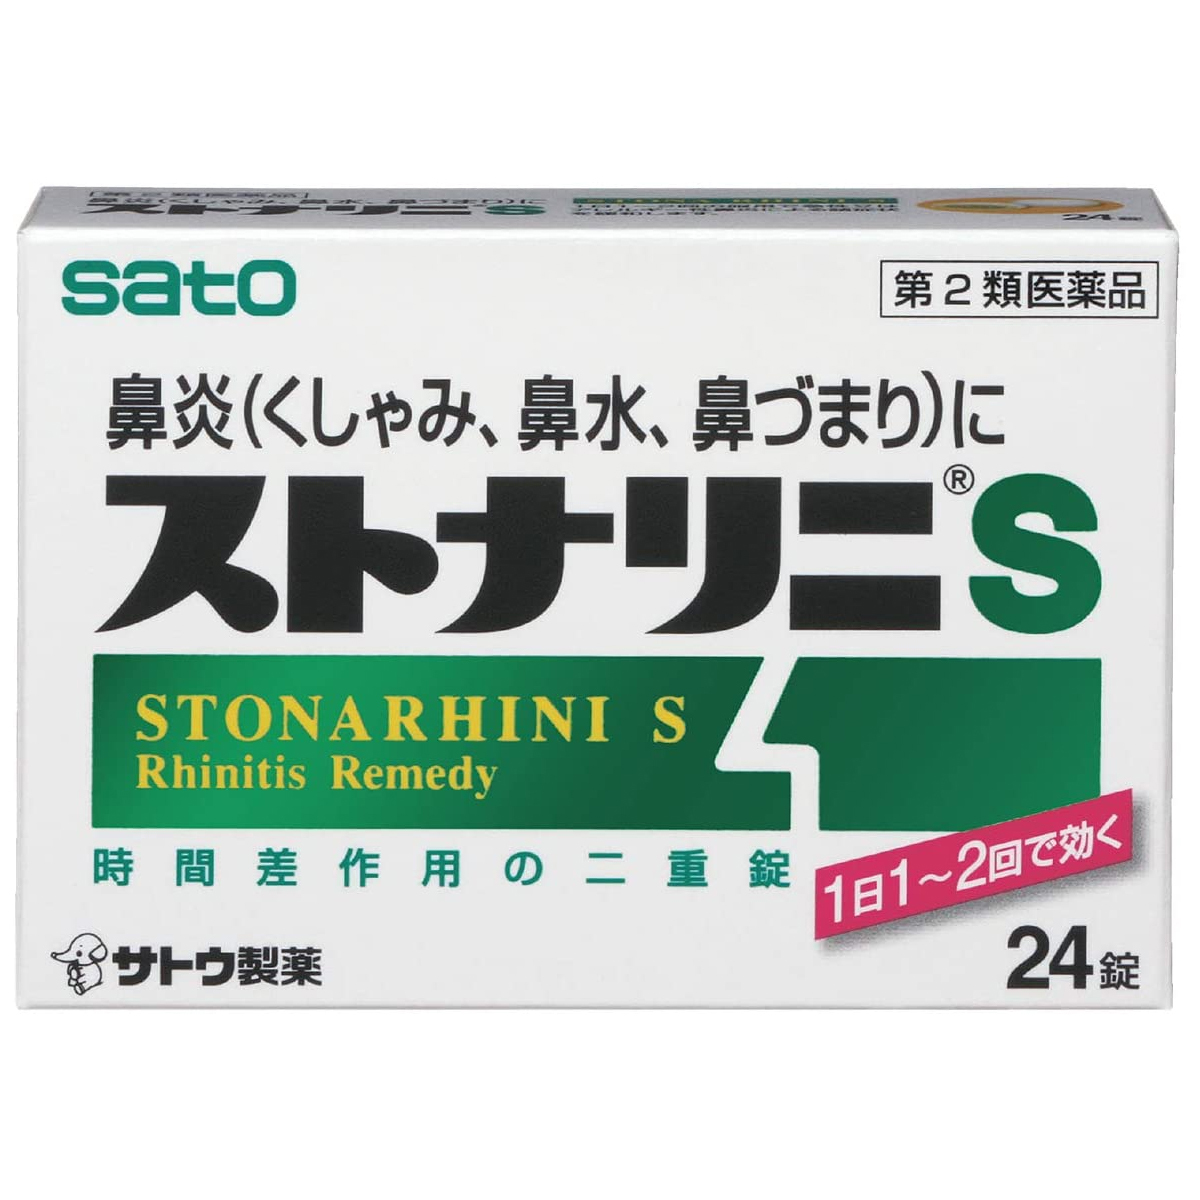 佐藤製薬 佐藤製薬 ストナリニS 24錠×2個 ストナリニ 鼻炎薬の商品画像